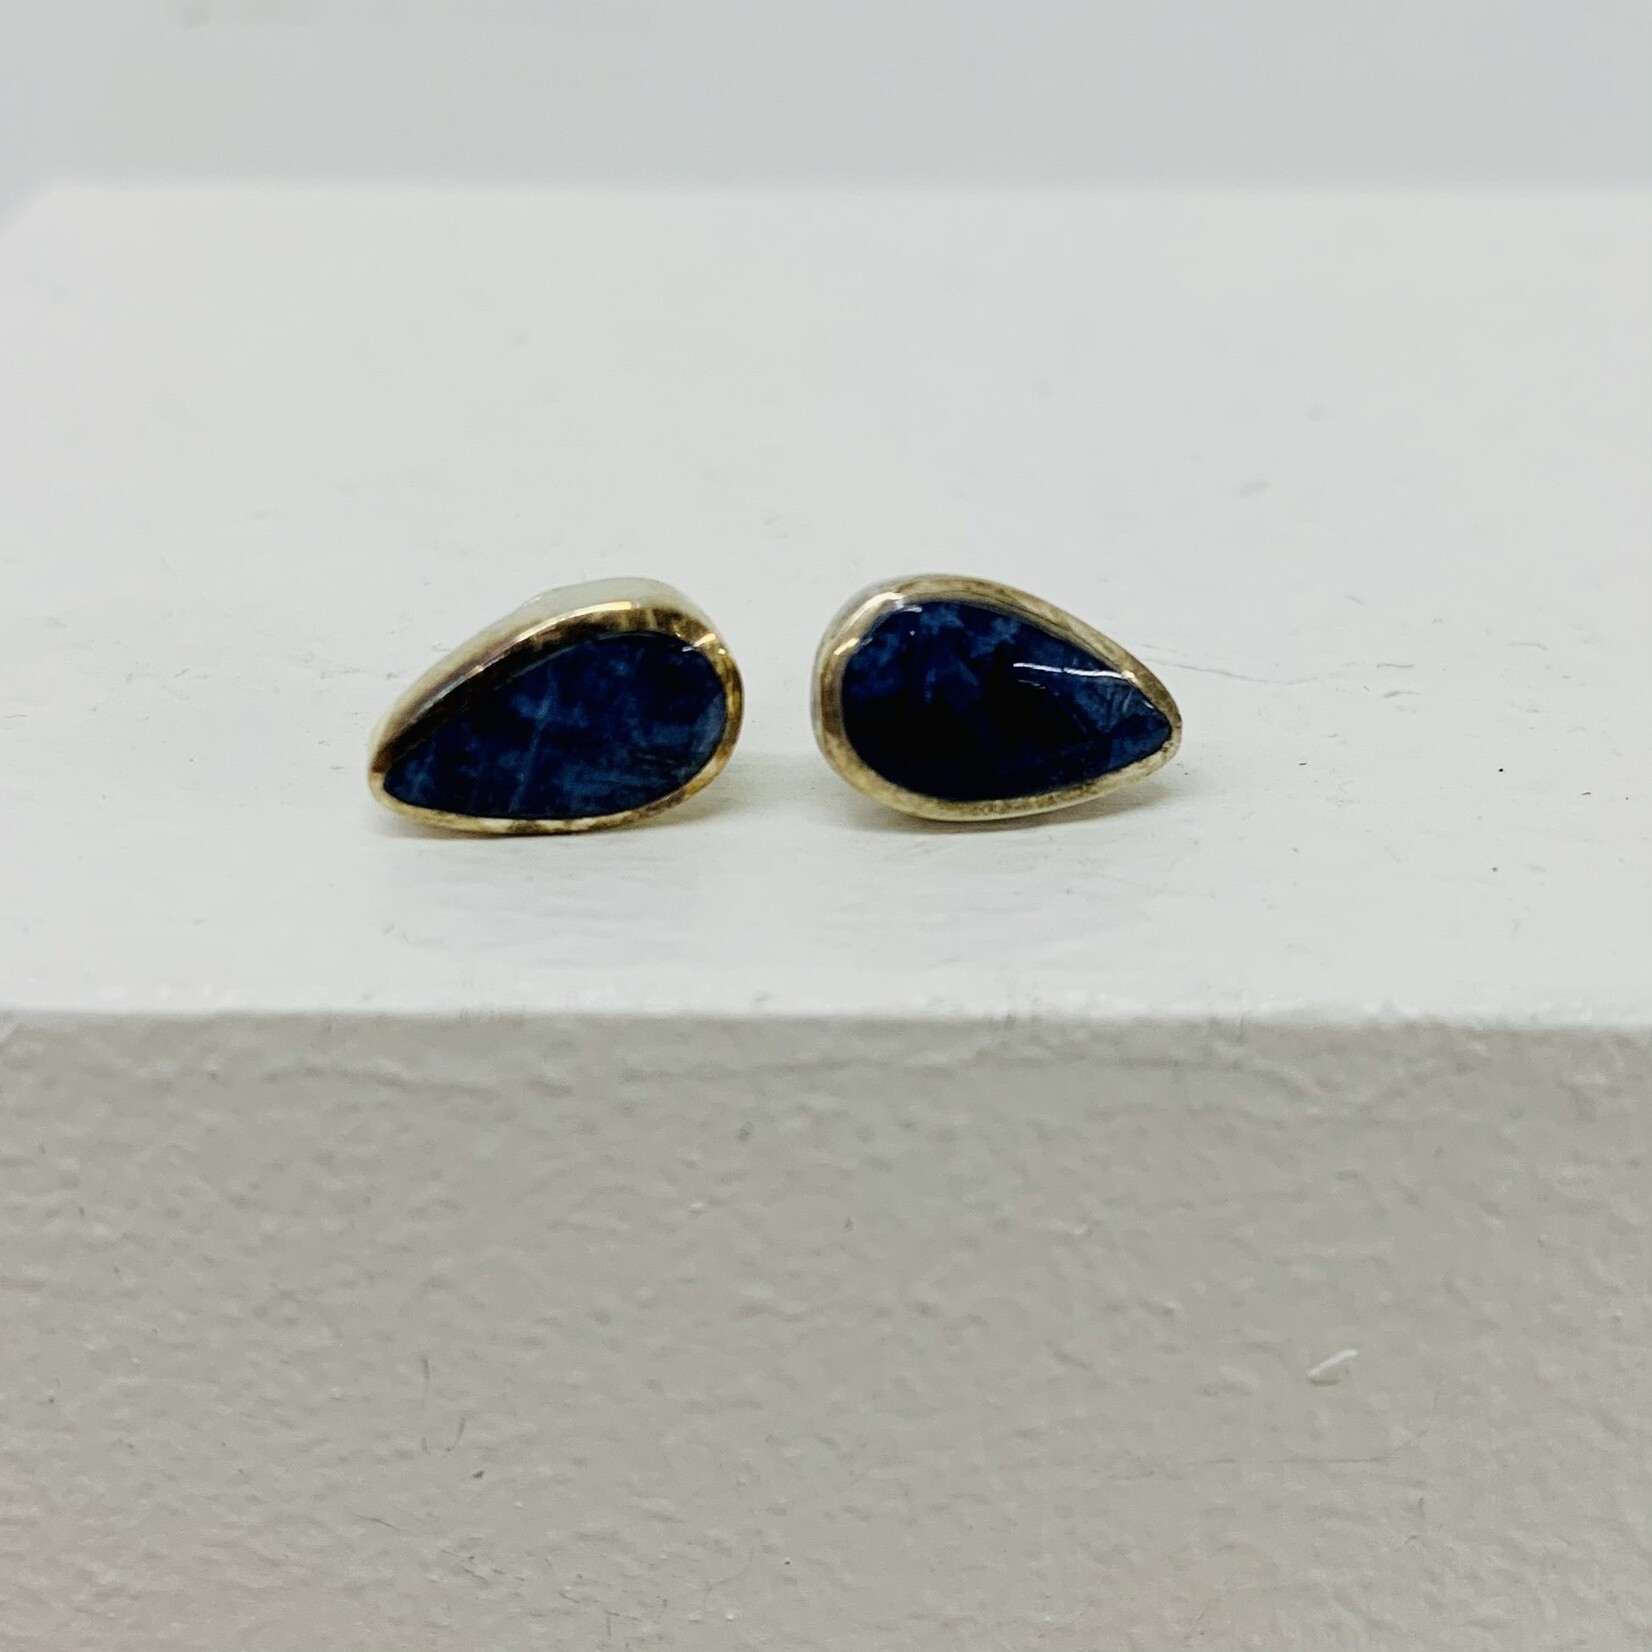 Ten Thousand Villages USA Blue Teardrop Earrings